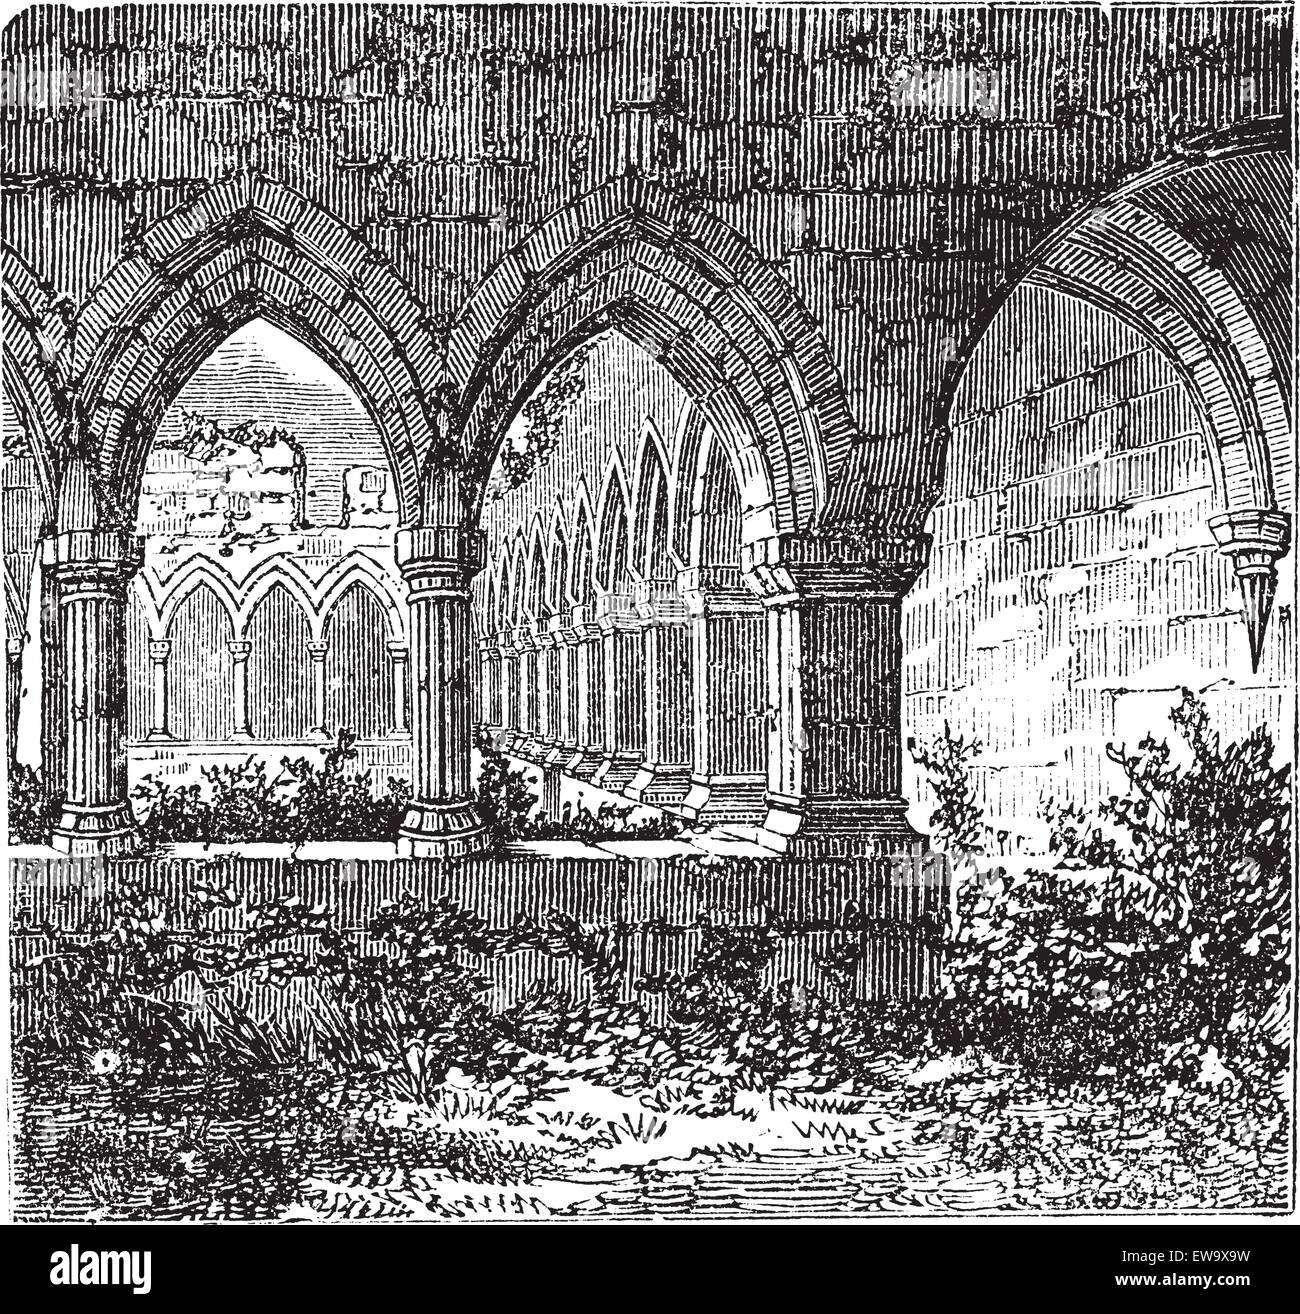 Gotischen Kreuzgang und Arch an Kilconnel Abbey, in der Grafschaft Galway, Irland. Alte Gravur. Alte eingravierte Darstellung der gotische Kreuzgang. Stock Vektor